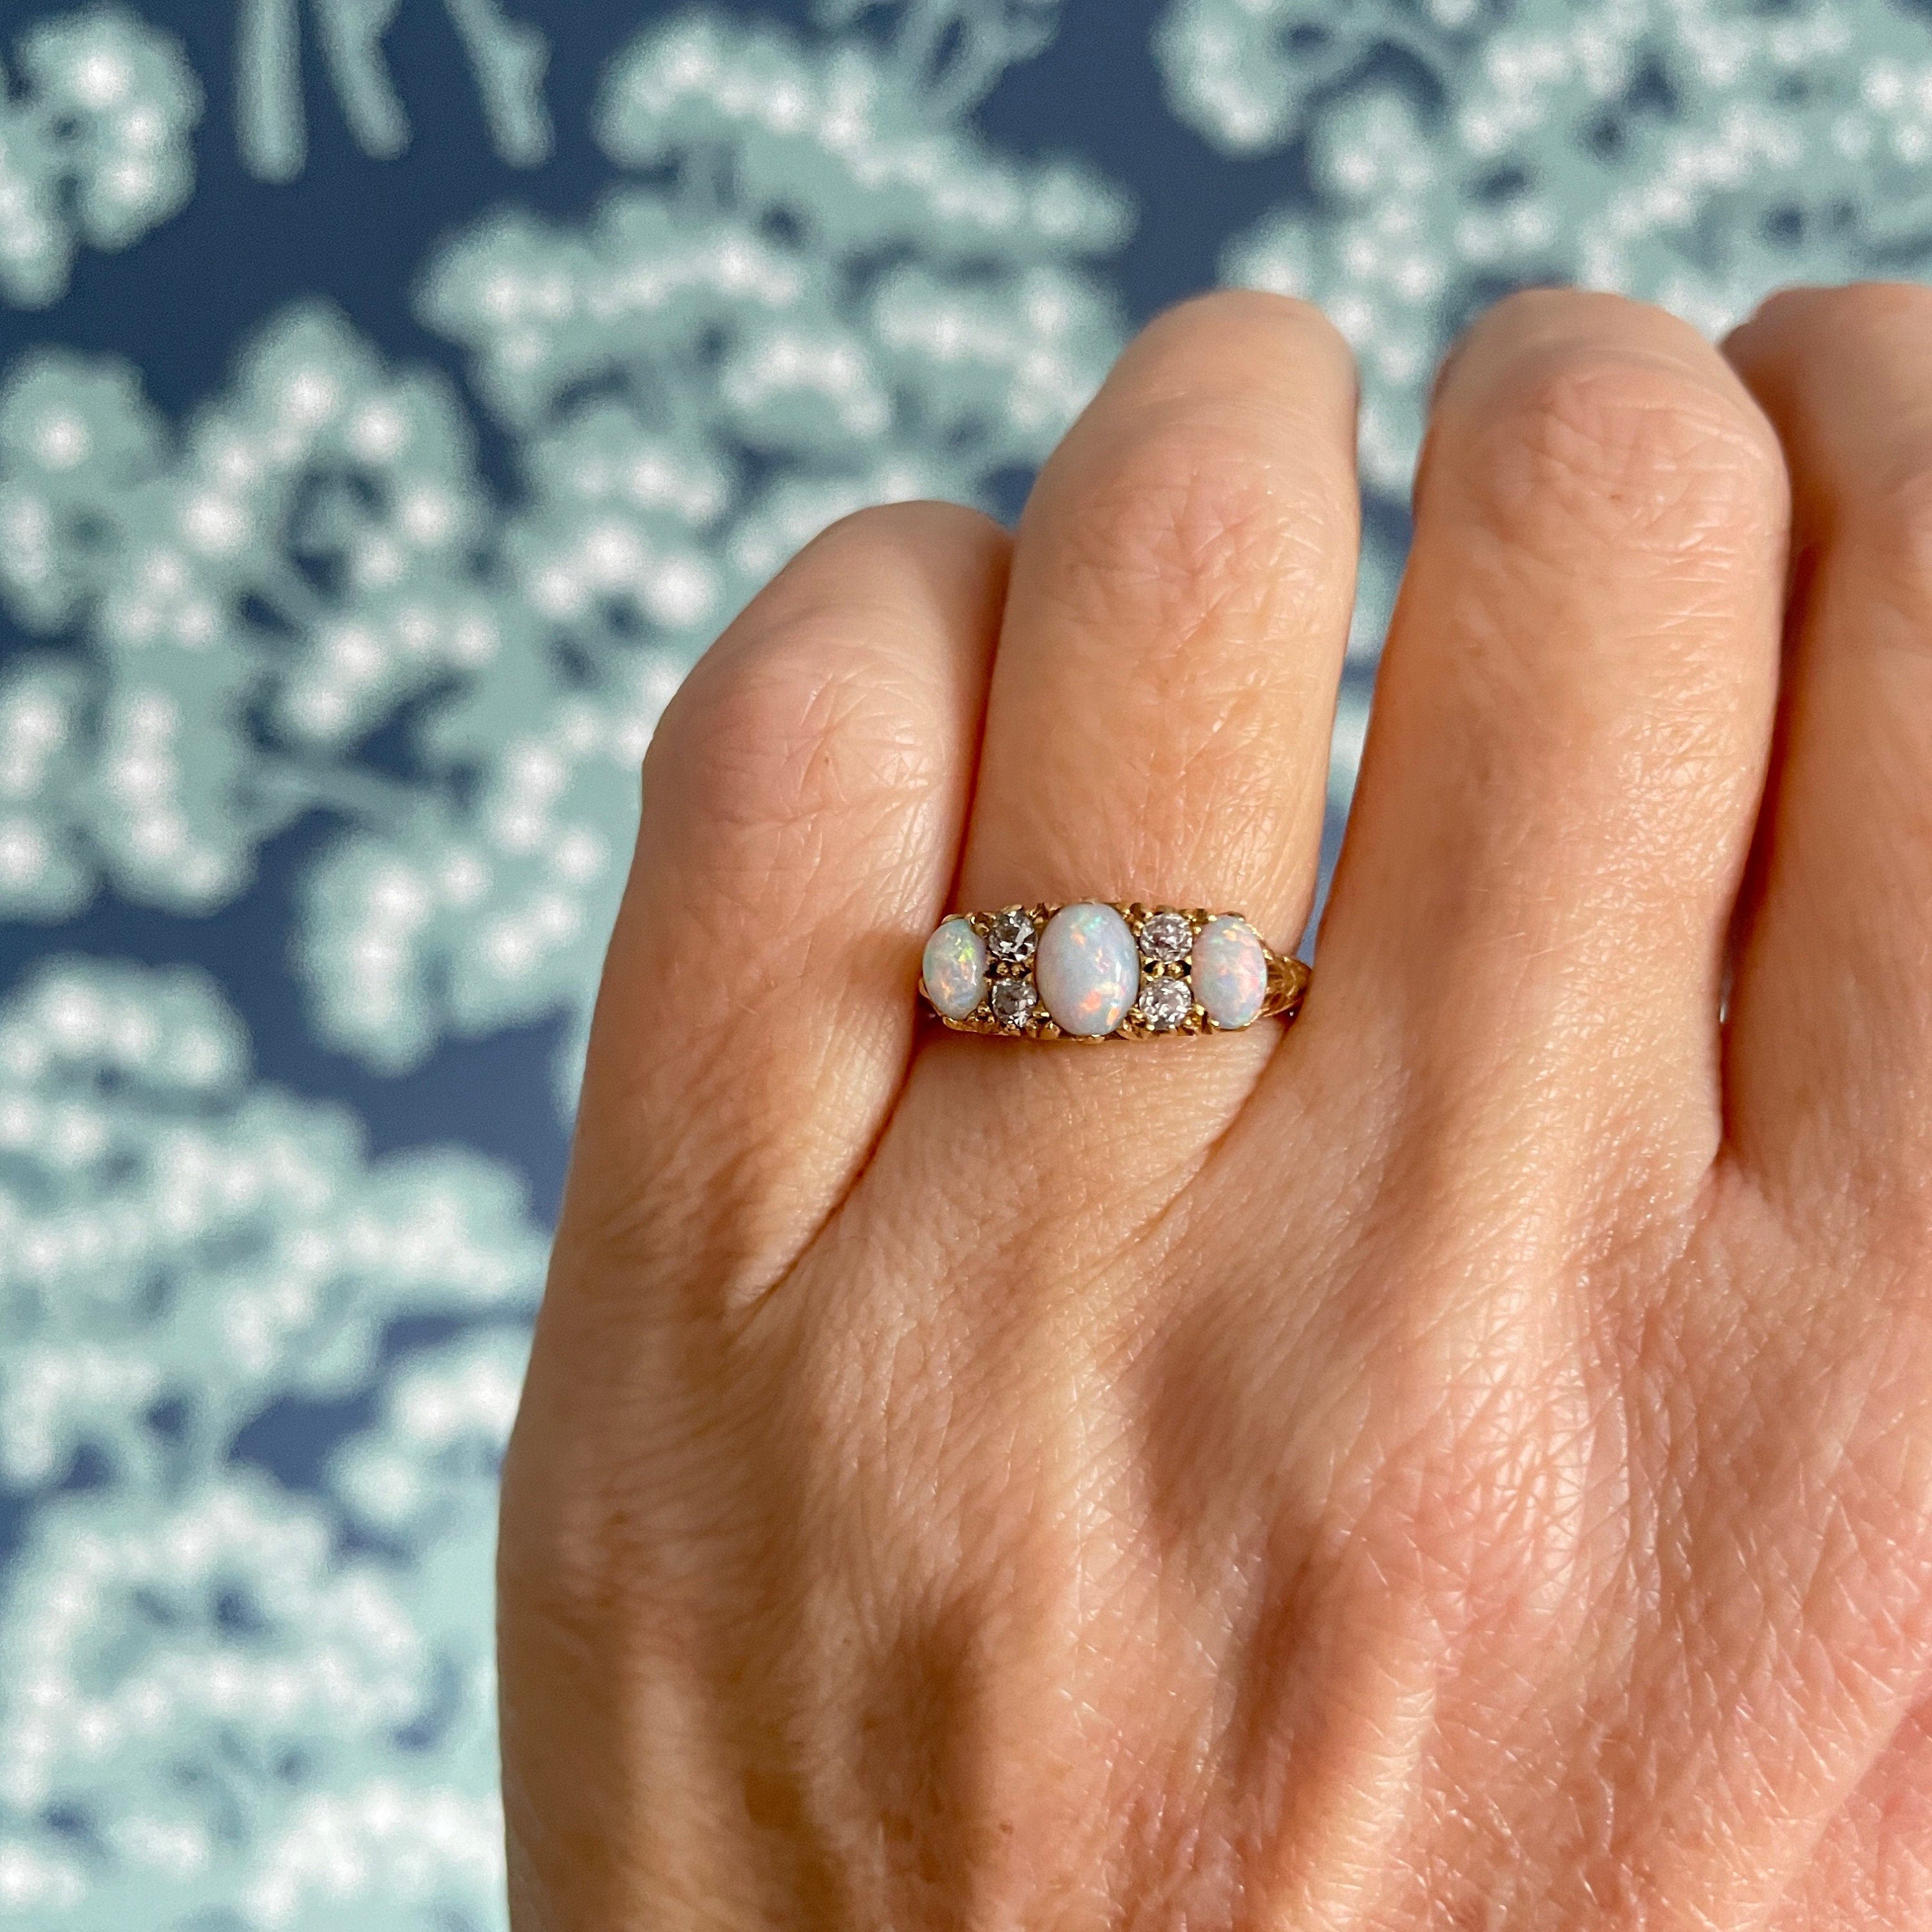 Australian Koroit Boulder Opal Ring, October Birthstone Ring – Cantik